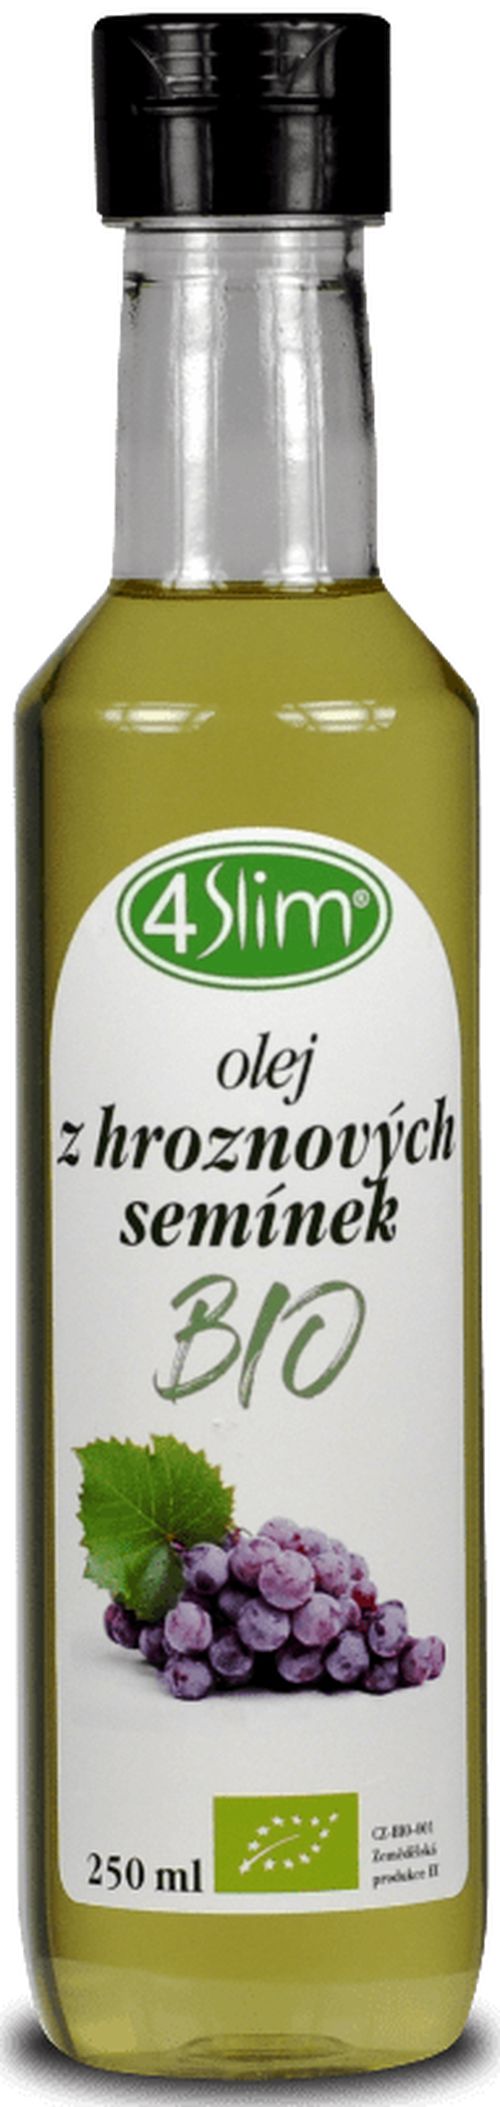 4Slim - Olej z hroznových semienok BIO, 250 ml *CZ-BIO-001